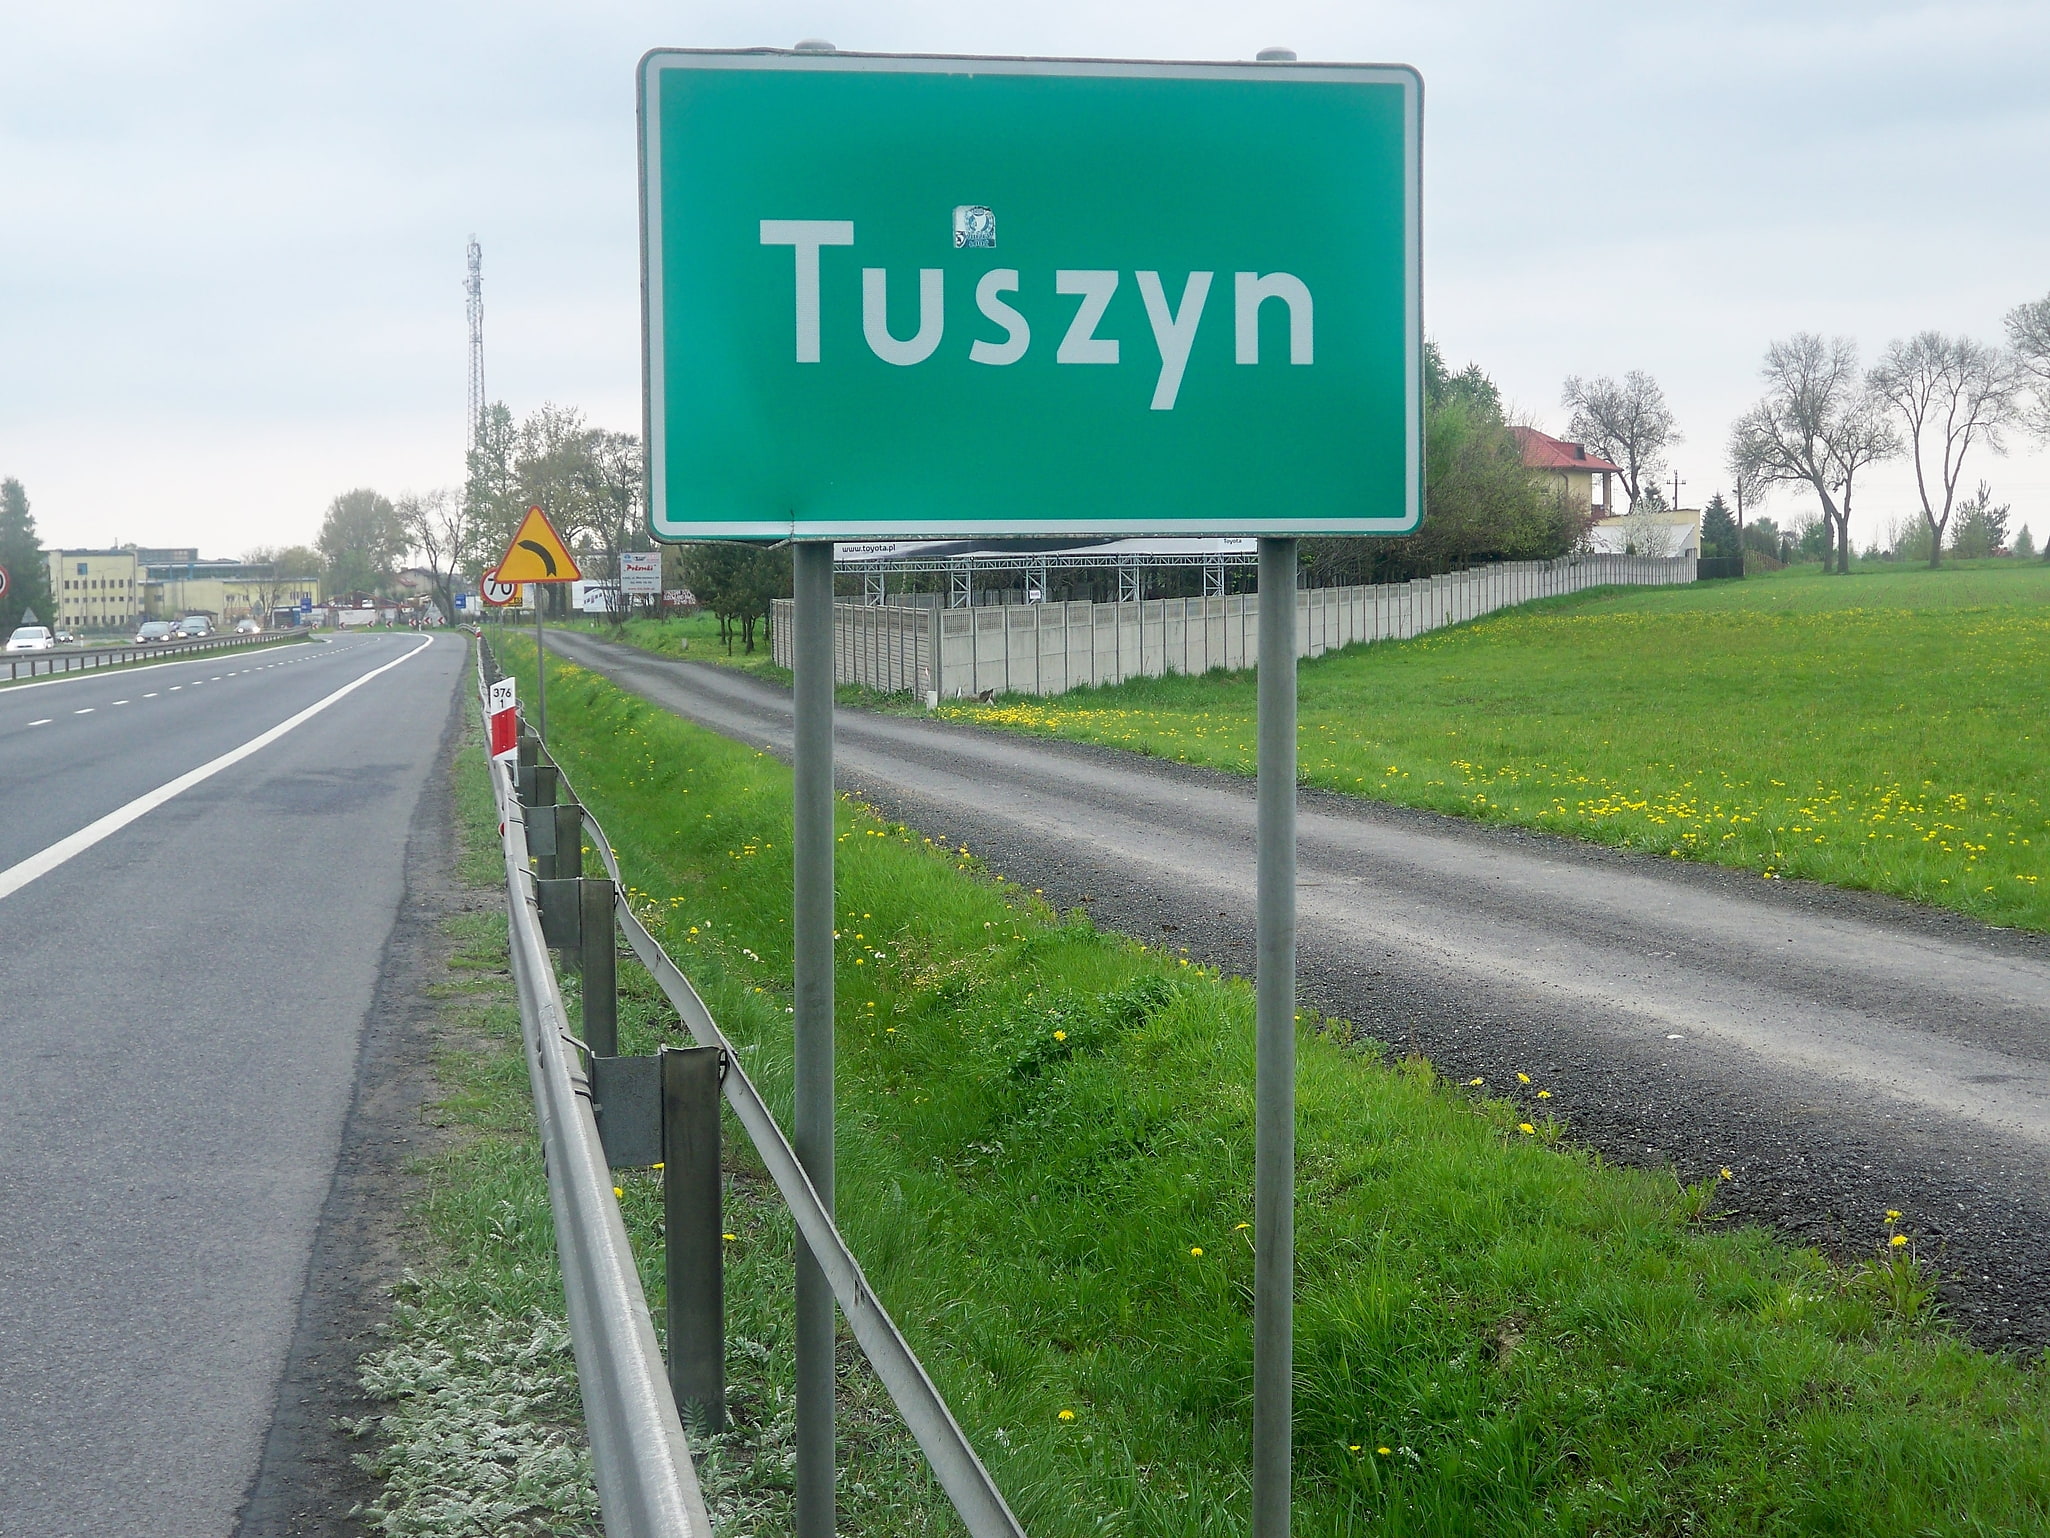 Tuszyn, Poland